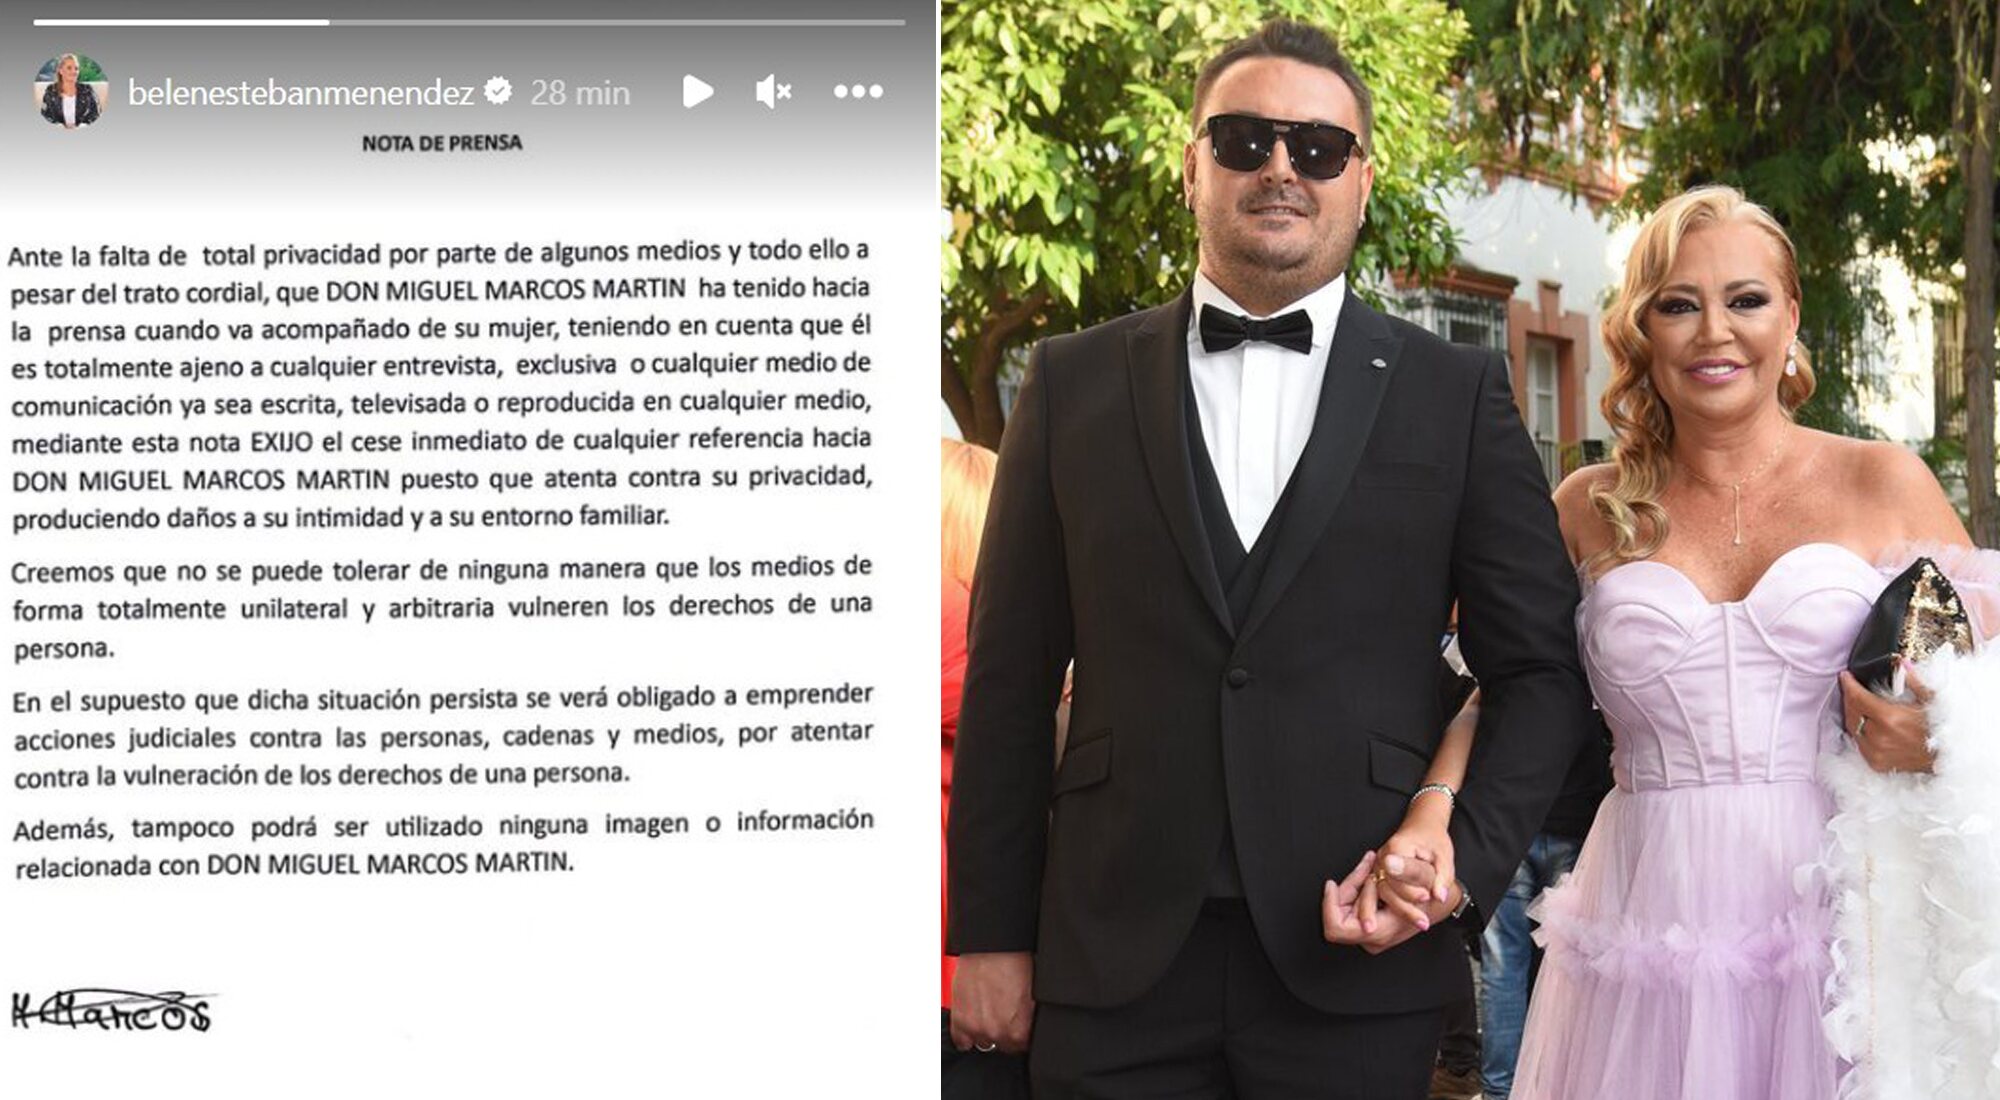 Nota de prensa publicada por Belén Esteban en nombre de su marido, junto a una foto de la pareja